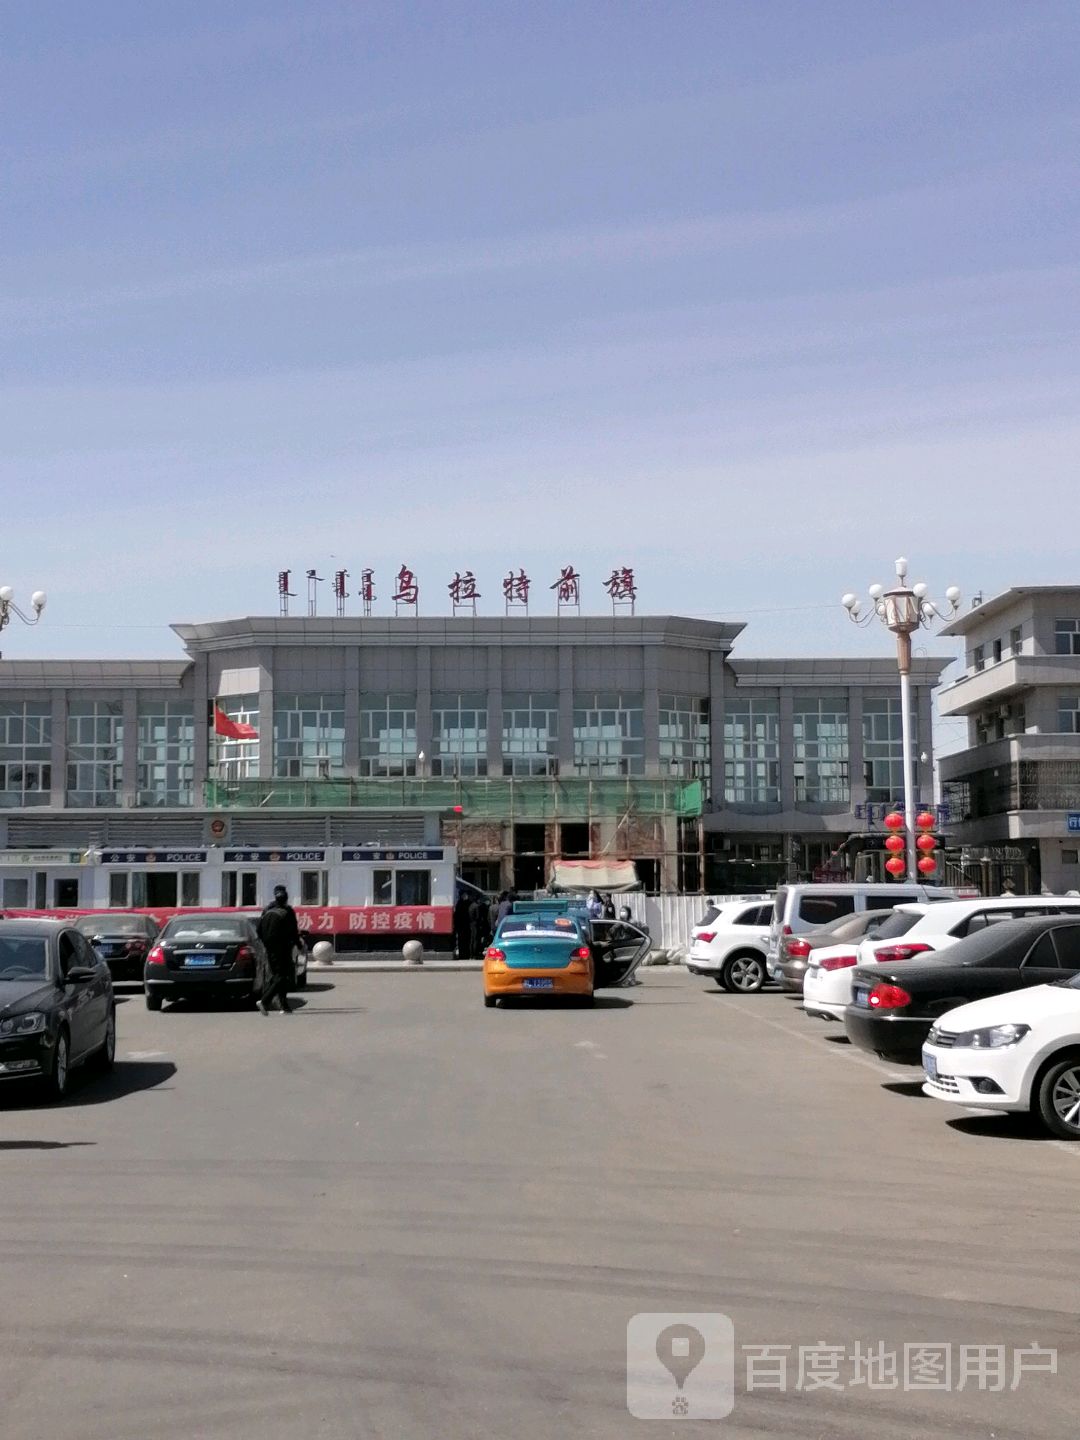 内蒙古自治区巴彦淖尔市乌拉特前旗红旗大街